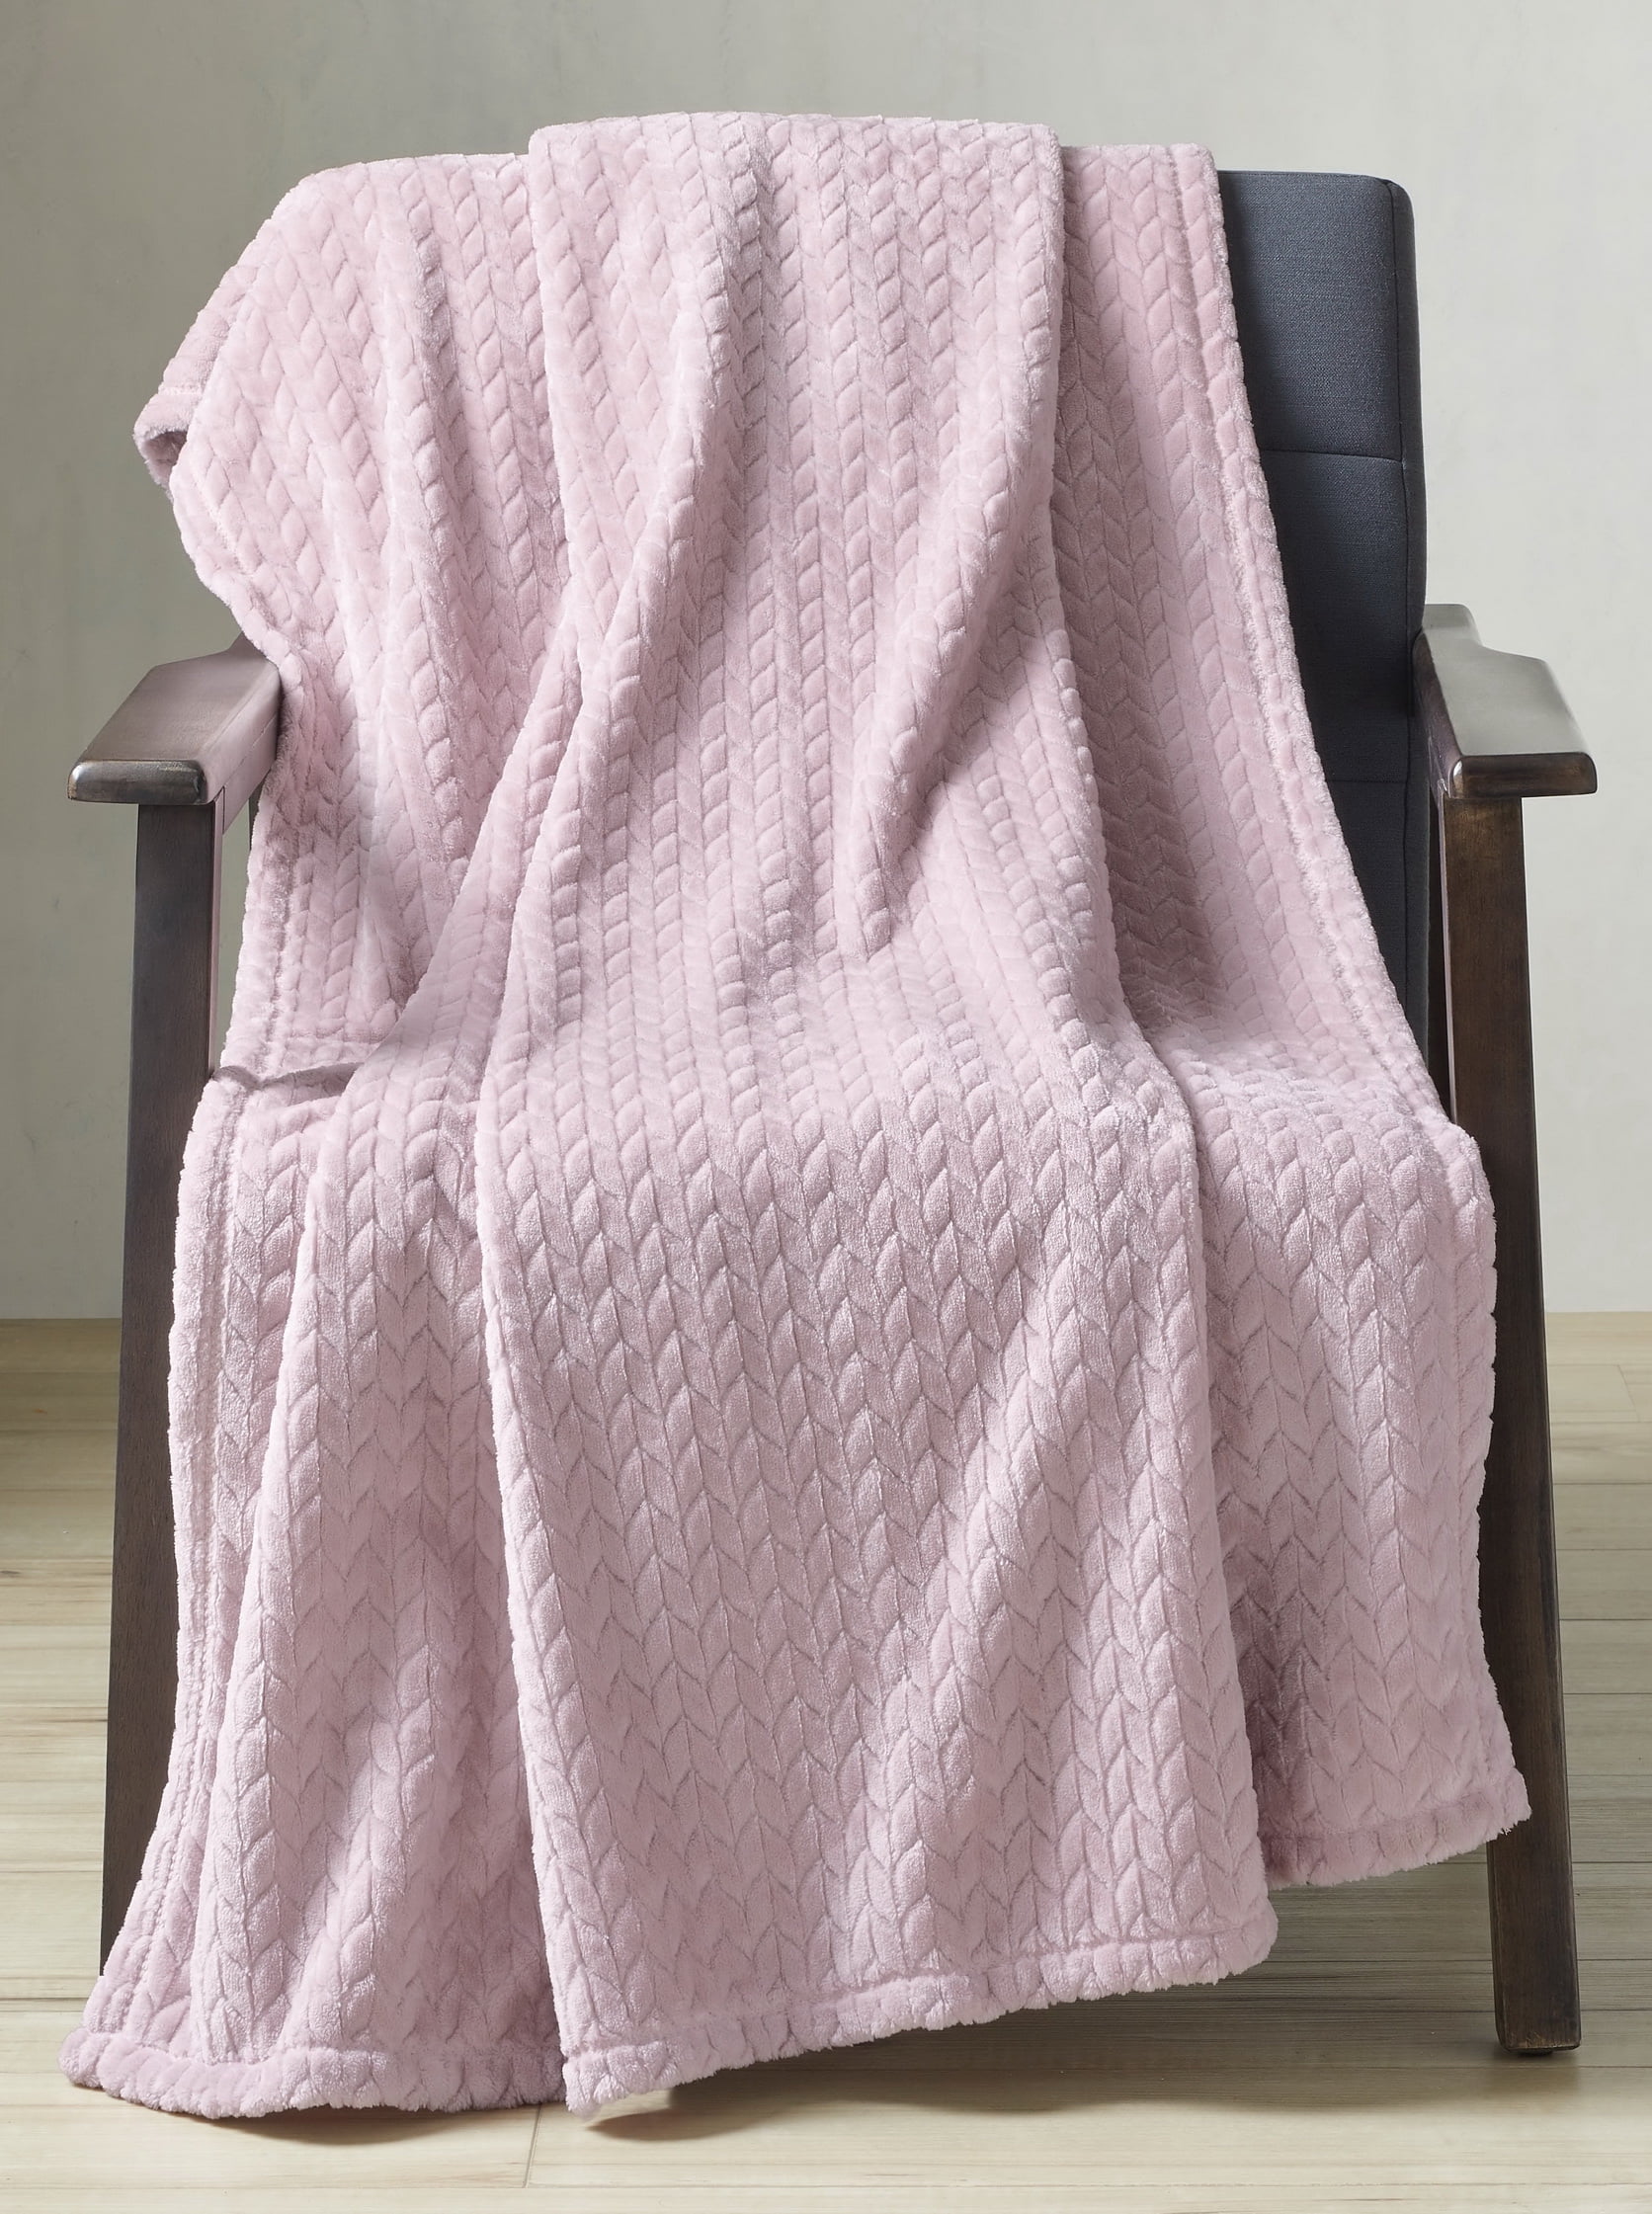 50" X 72" Better Homes & Gardens Velvet Plush Throw Blanket (Pink) $6.25 + Free S&H w/ Walmart+ or $35+